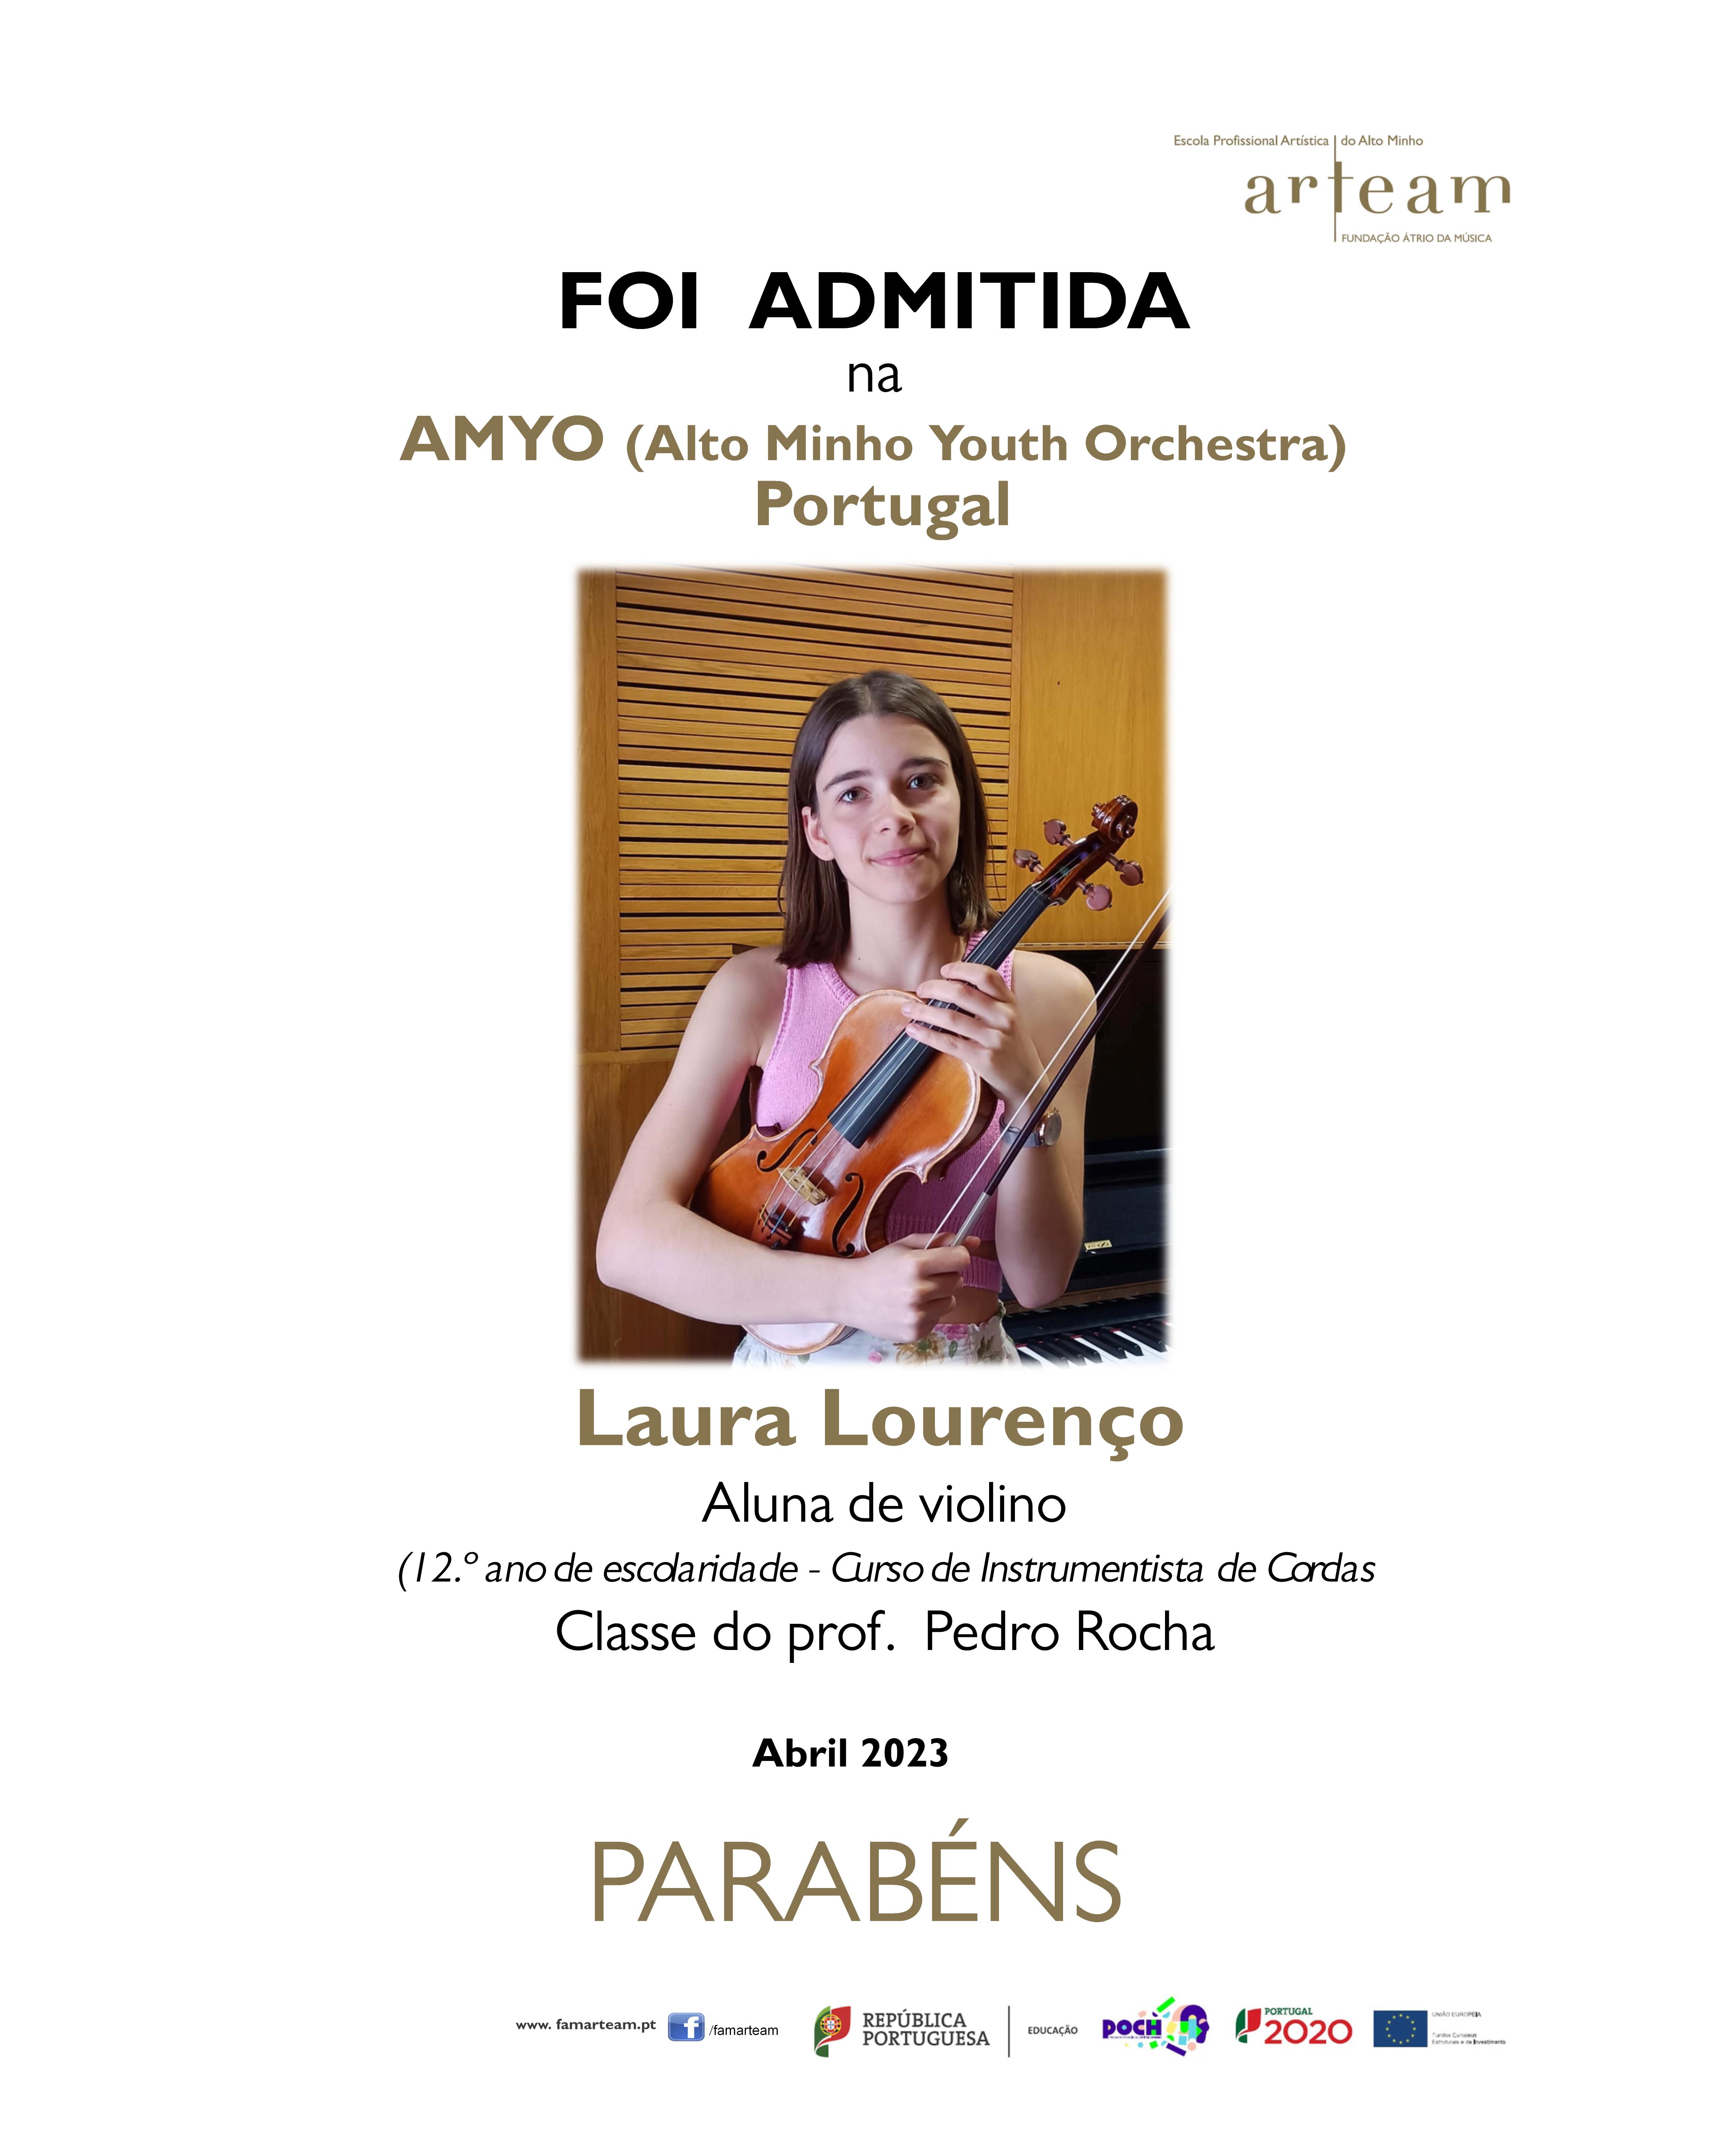 Laura Lourenço, aluna da ARTEAM, selecionada para a Alto Minho Youth Orchestra (AMYO)